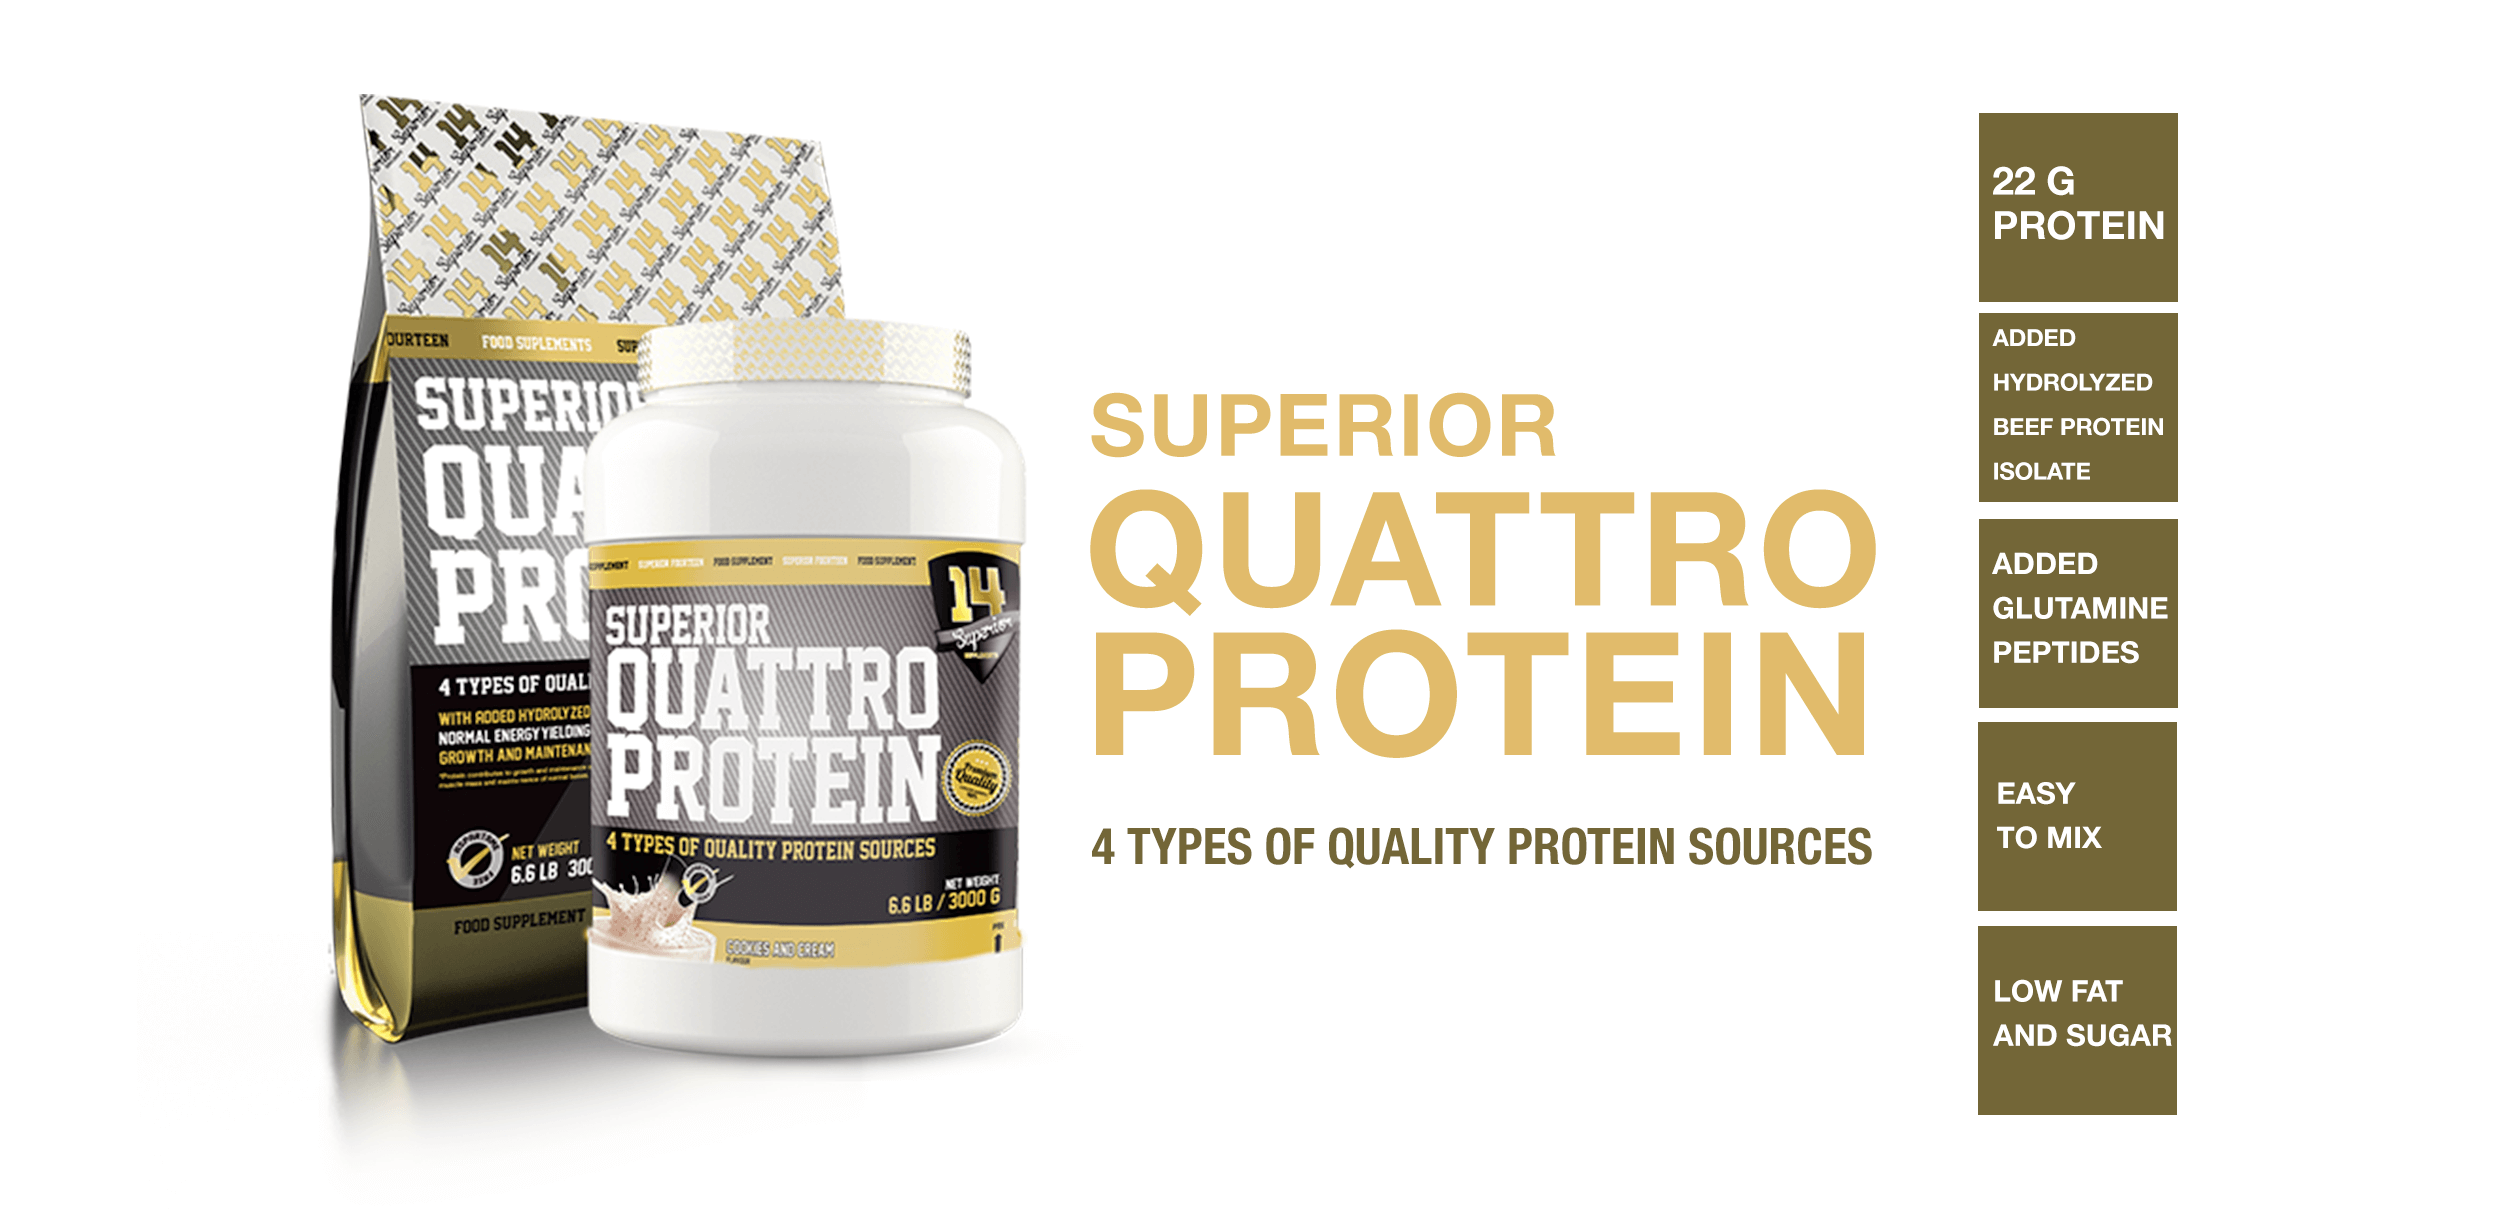 Superior14 Quatro protein team | FitnessMuscle.eu